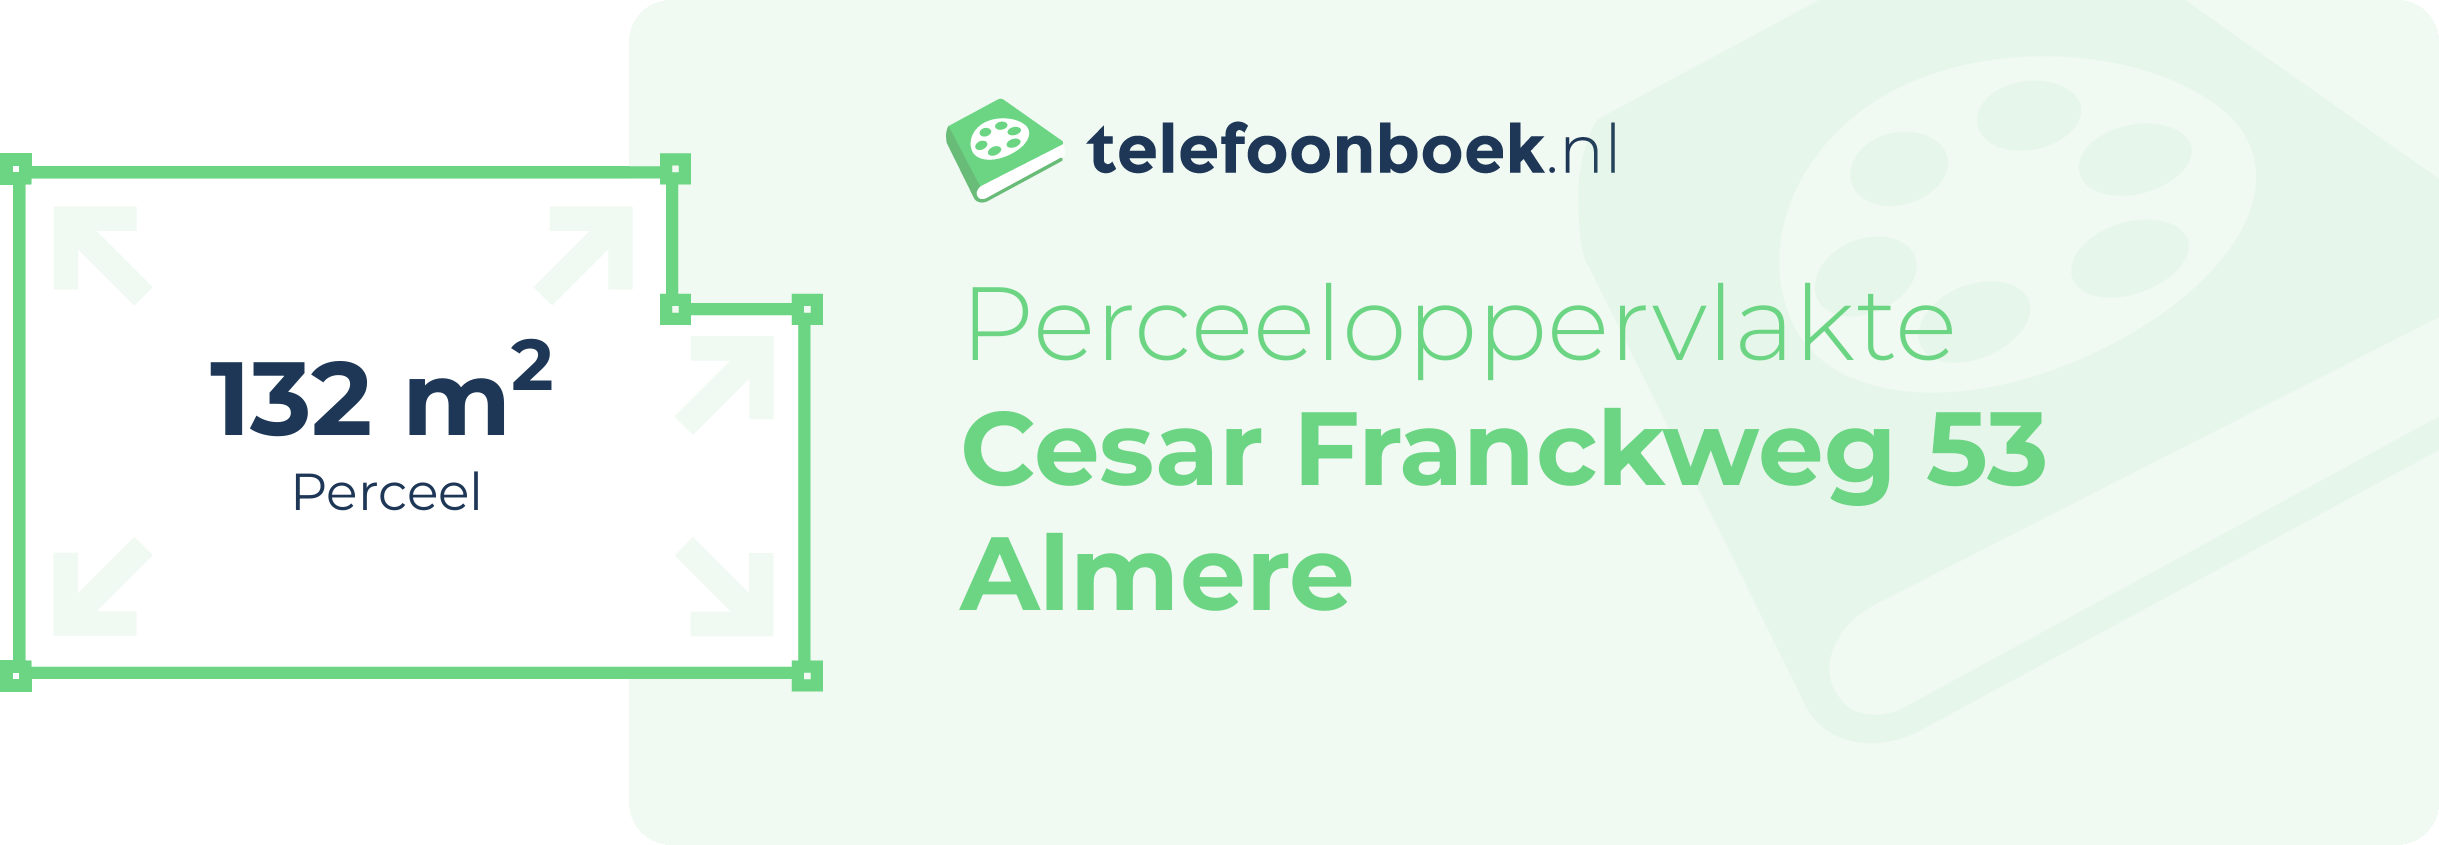 Perceeloppervlakte Cesar Franckweg 53 Almere